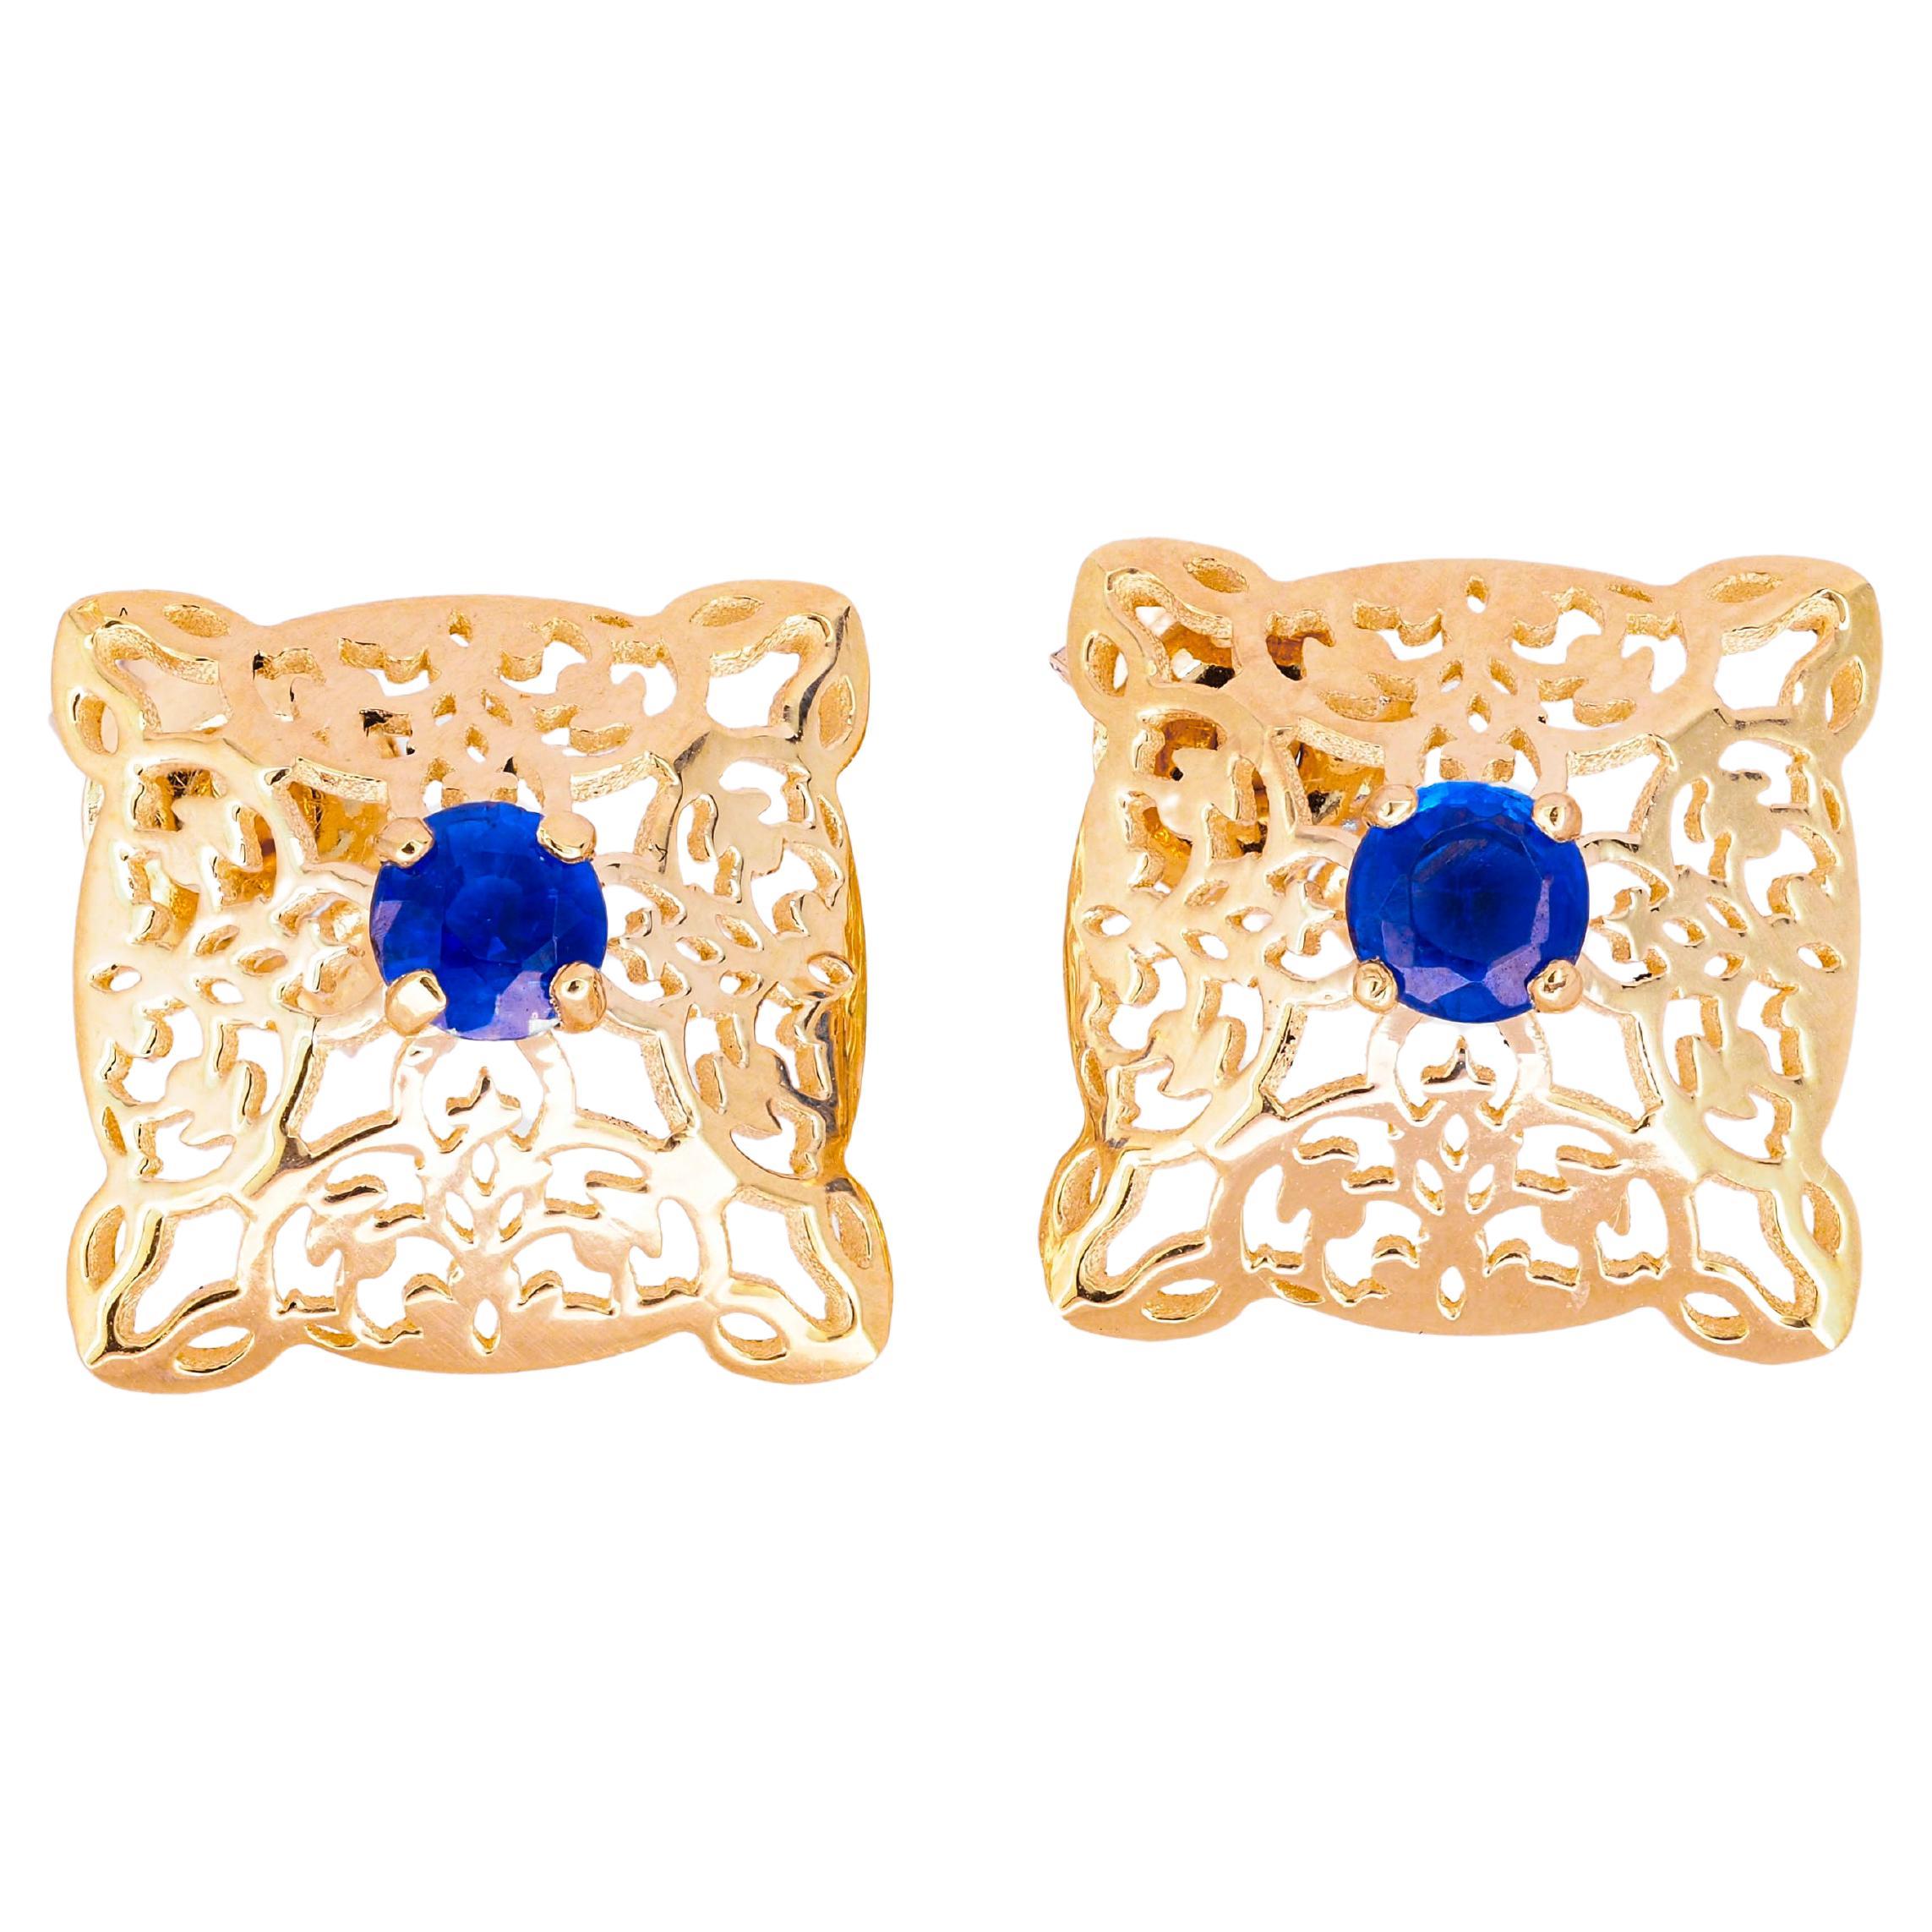 Sapphire Earrings Studs in 14k Gold